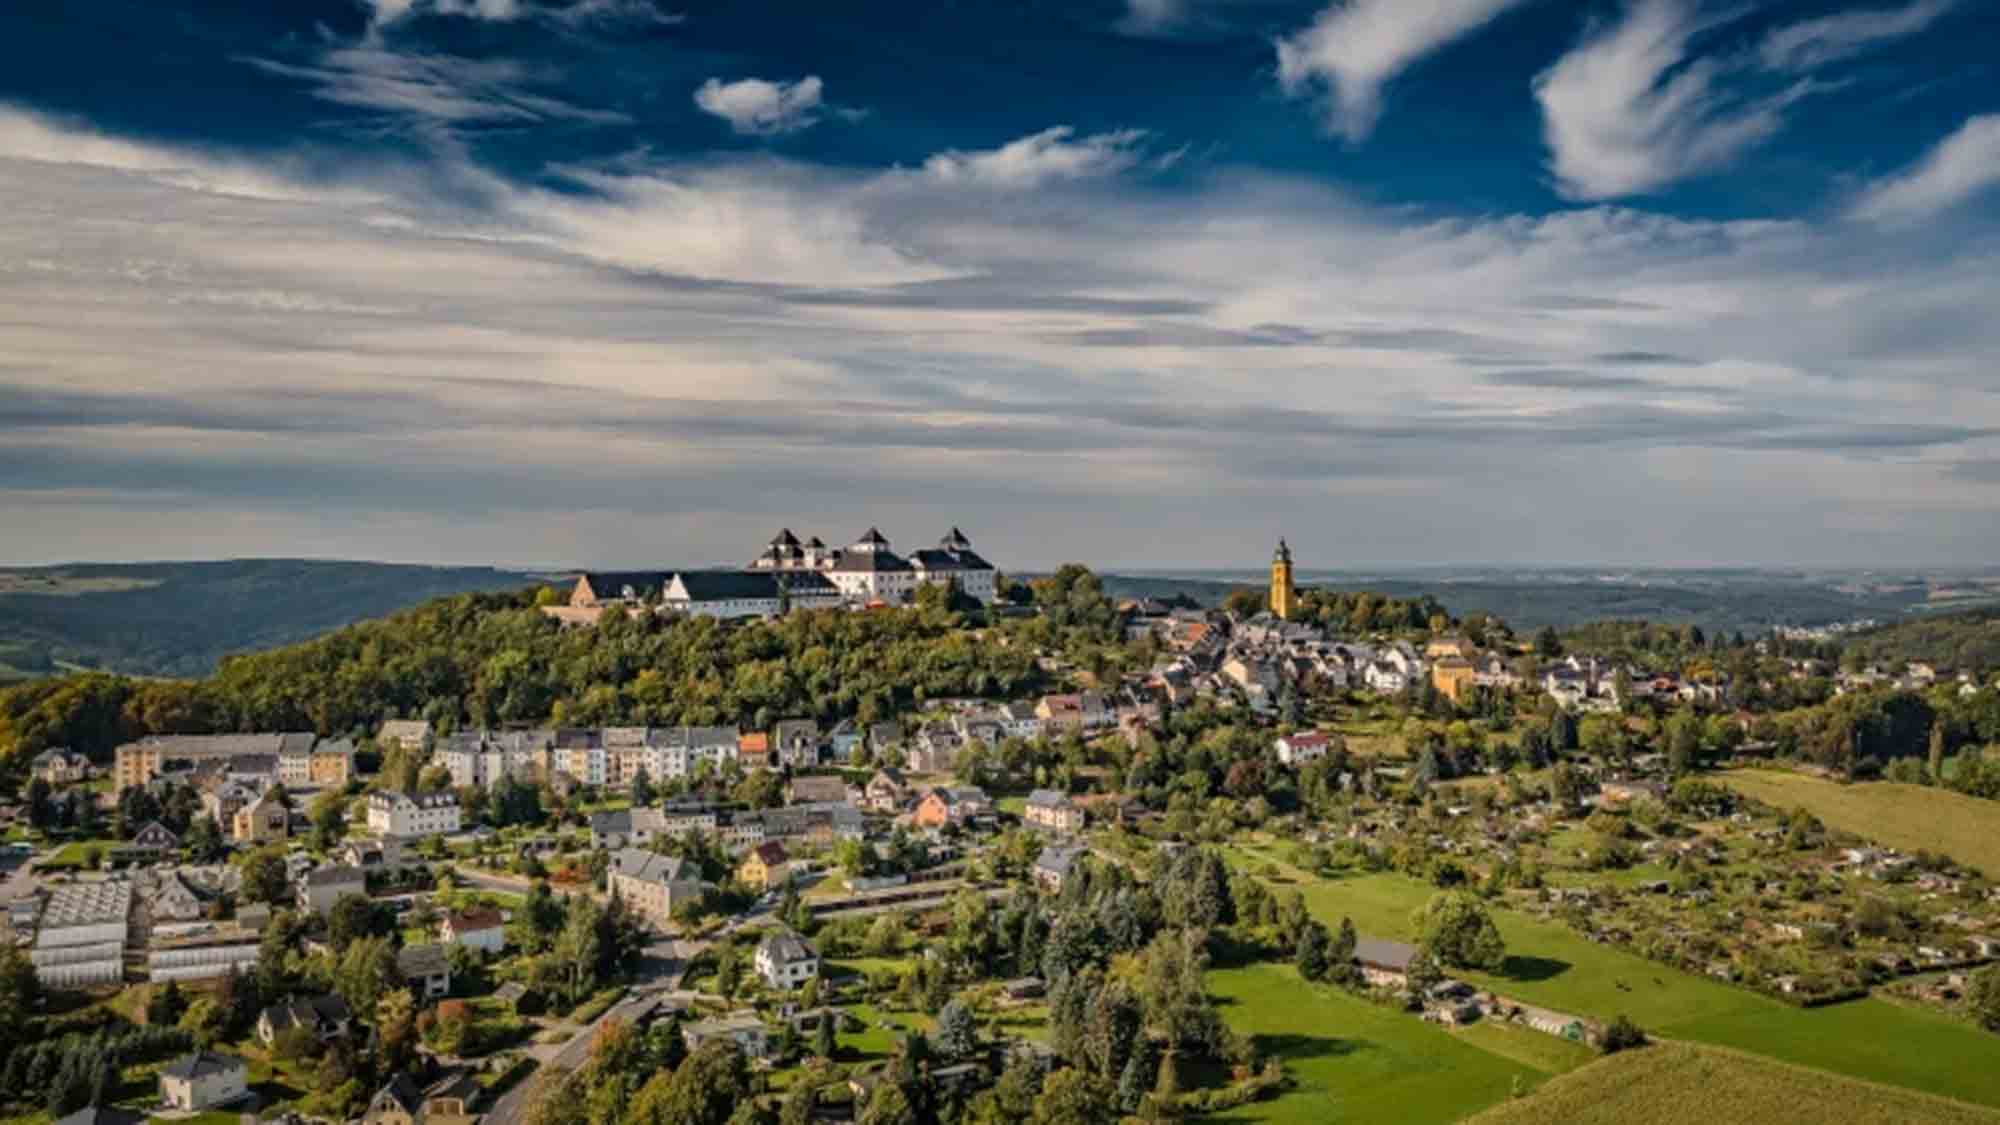 Neue Gastronomie für Schloss Augustusburg, Familienburg Scharfenstein sowie Schloss & Park Lichtenwalde gesucht